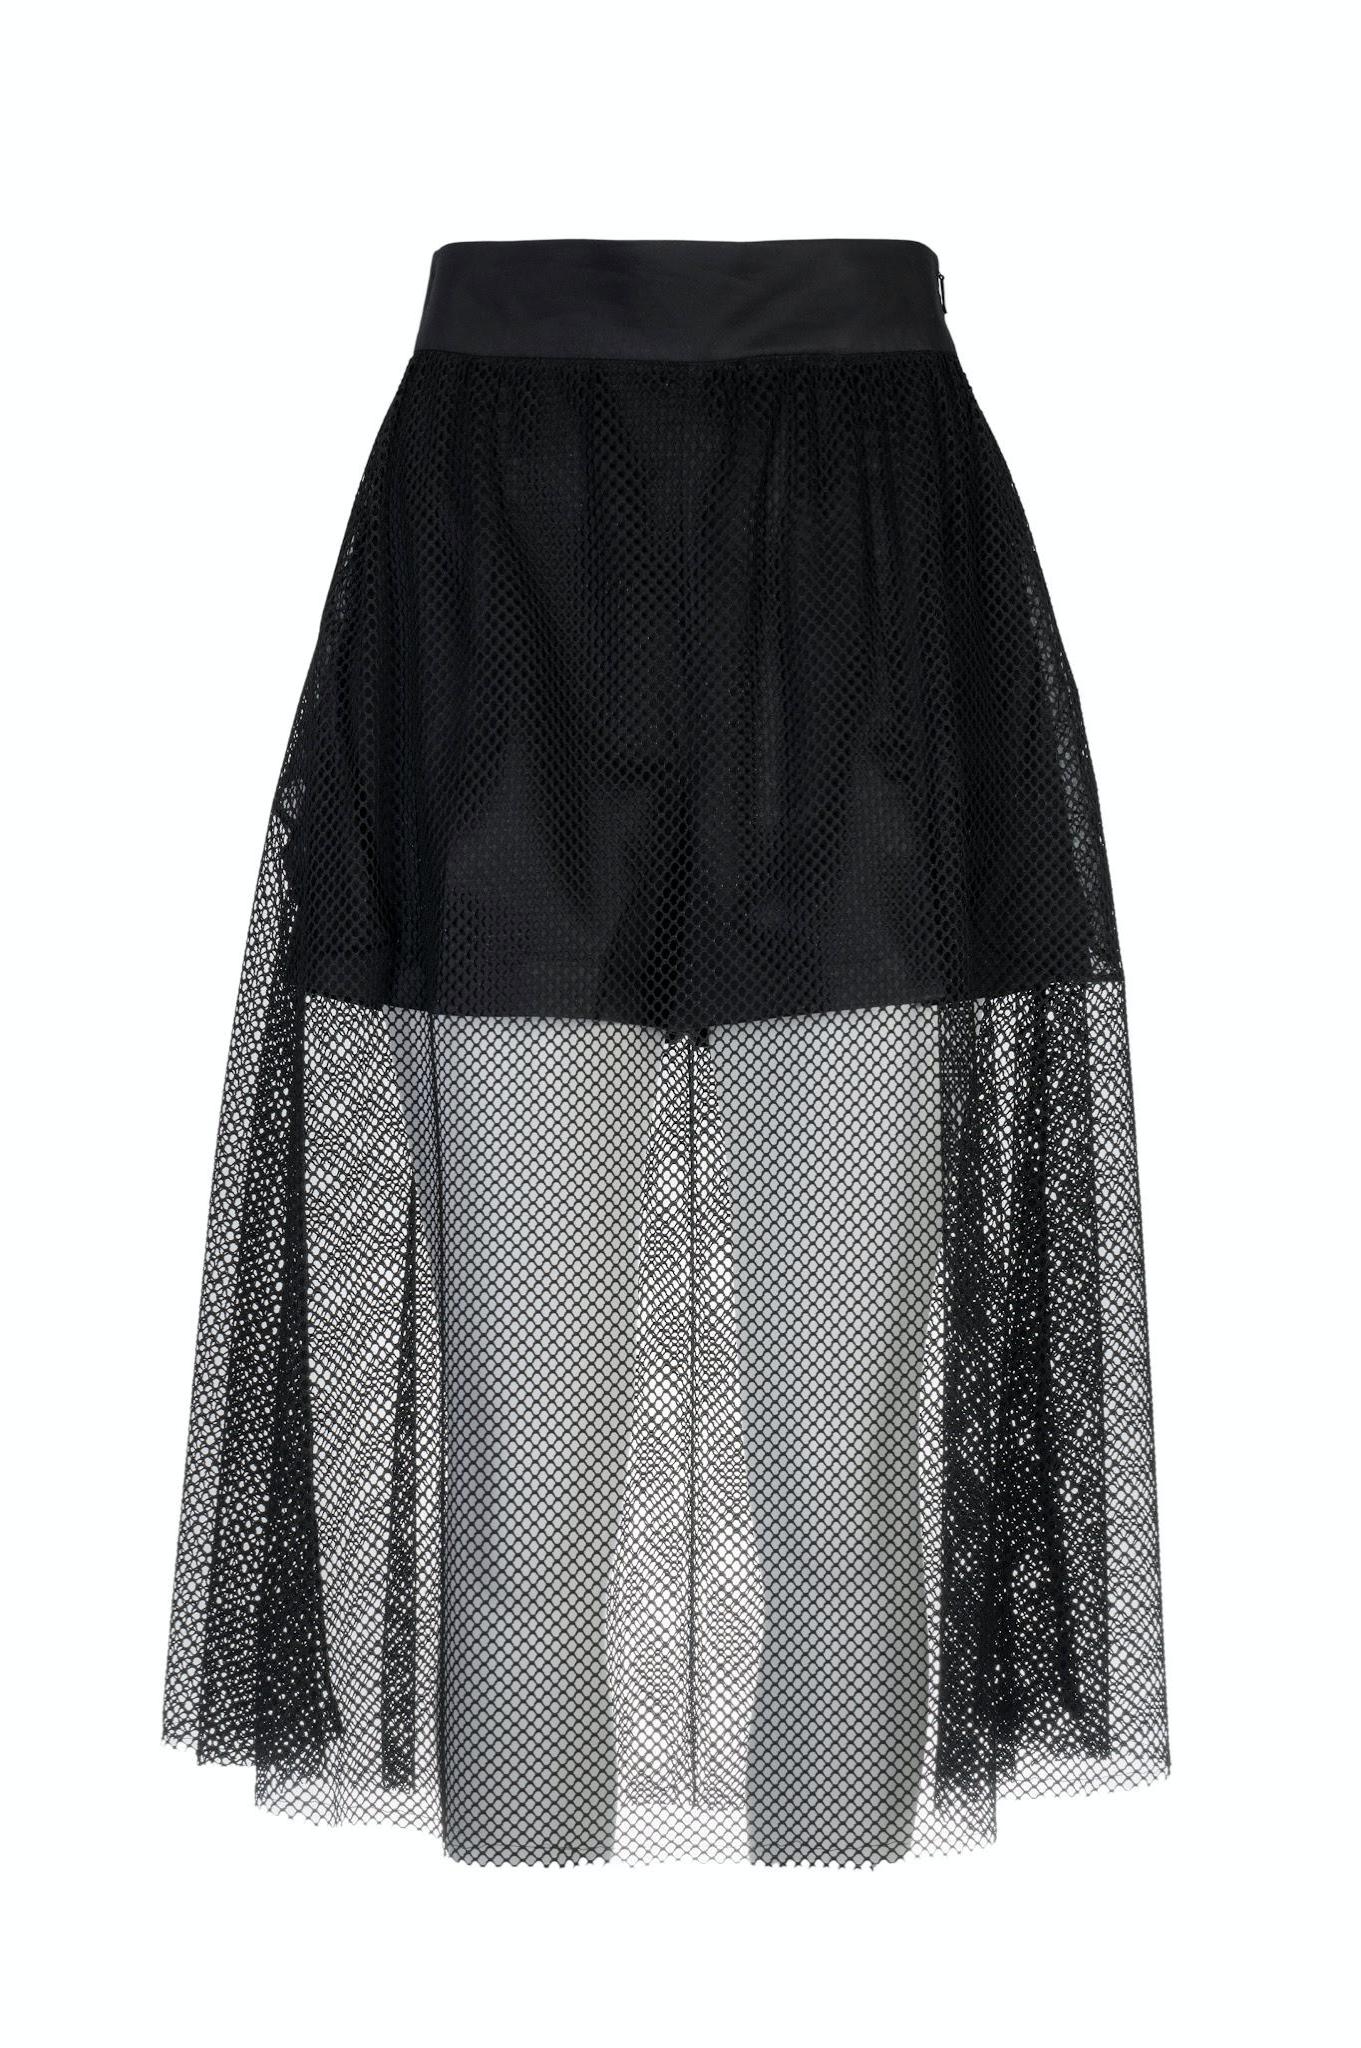 Black Ruffle Midi Skirt in Mesh